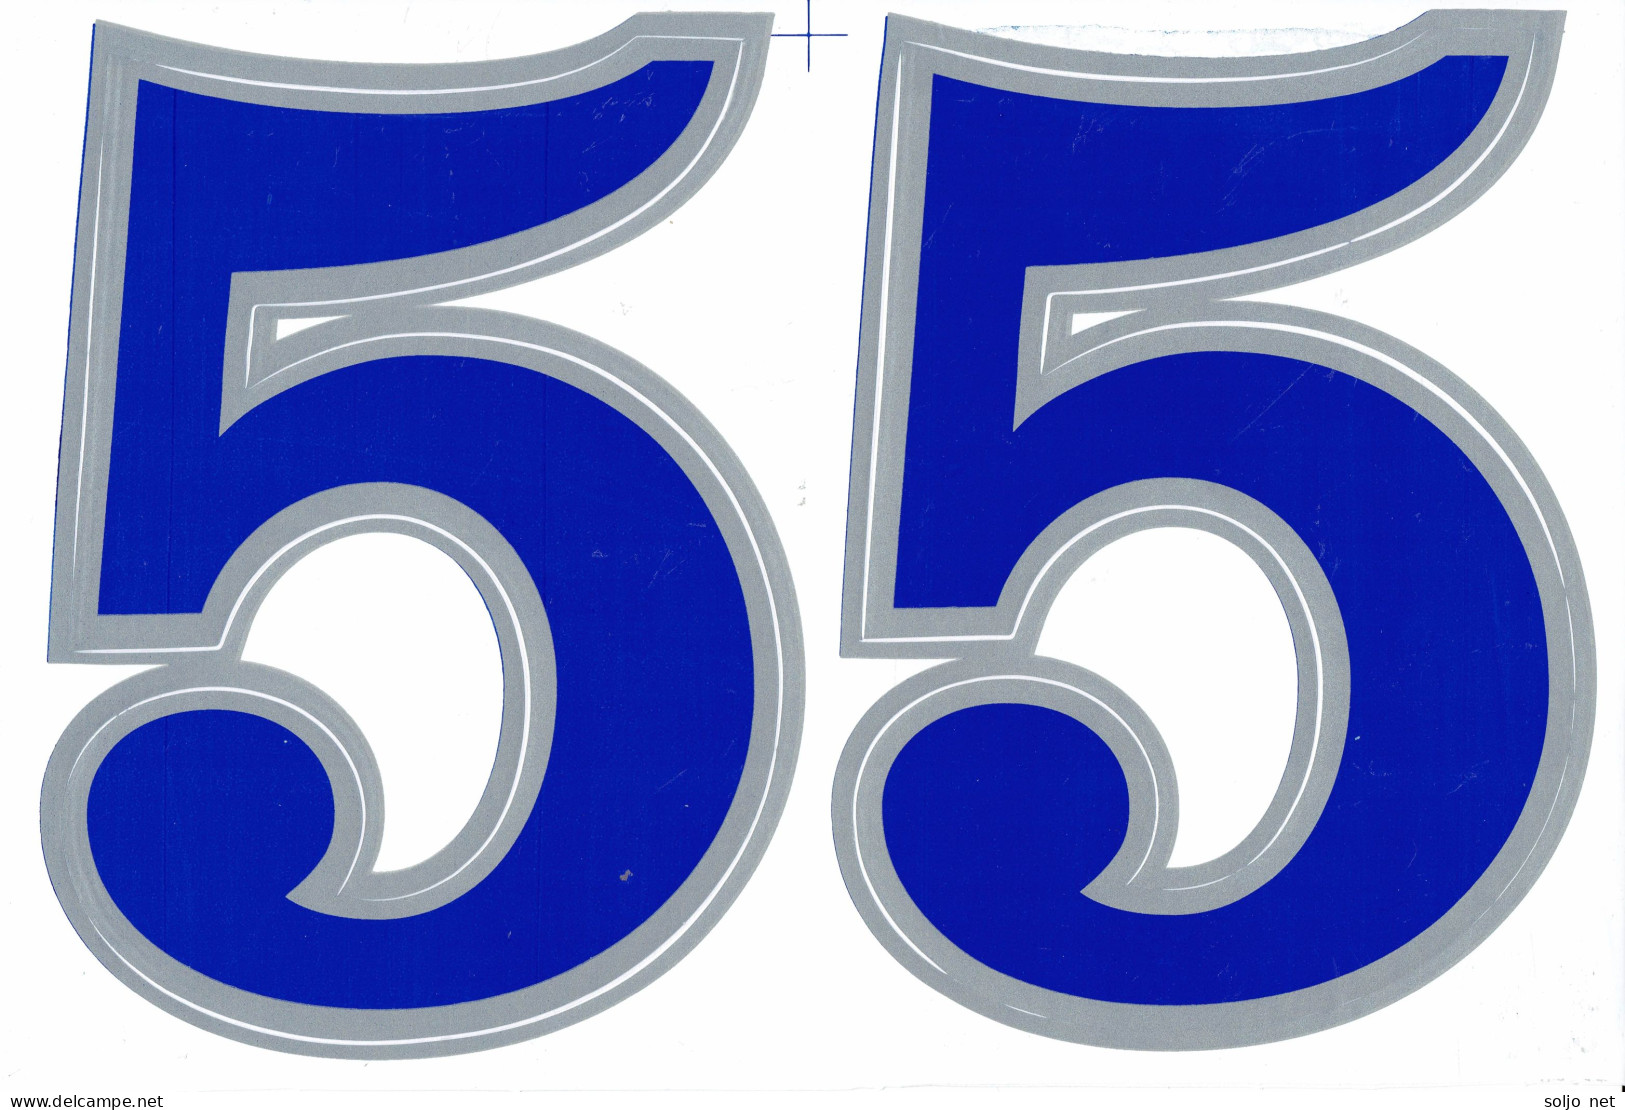 Grosse Nummer 5 Aufkleber 165 Mm Blau Blue Big Number Sticker A4 1 Bogen 27 X 18 Cm ST015 - Scrapbooking